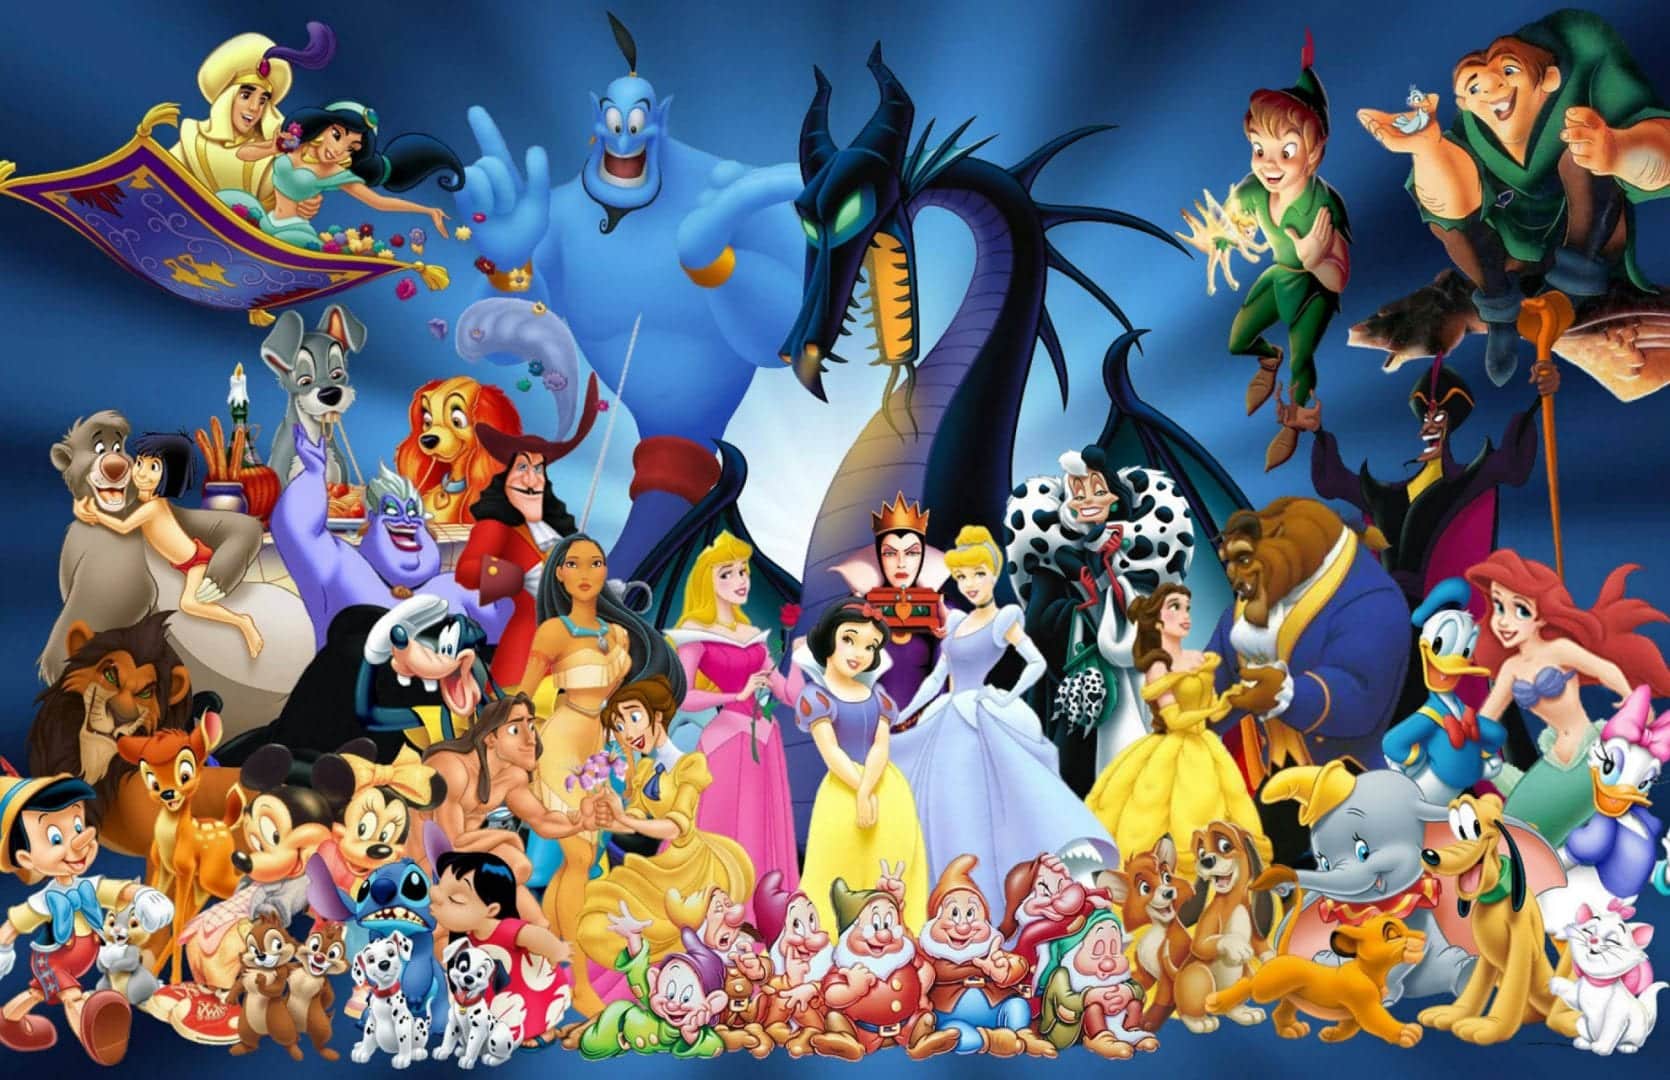  Myszka Miki - inspiracja, pochodzenie i historia największego symbolu Disneya